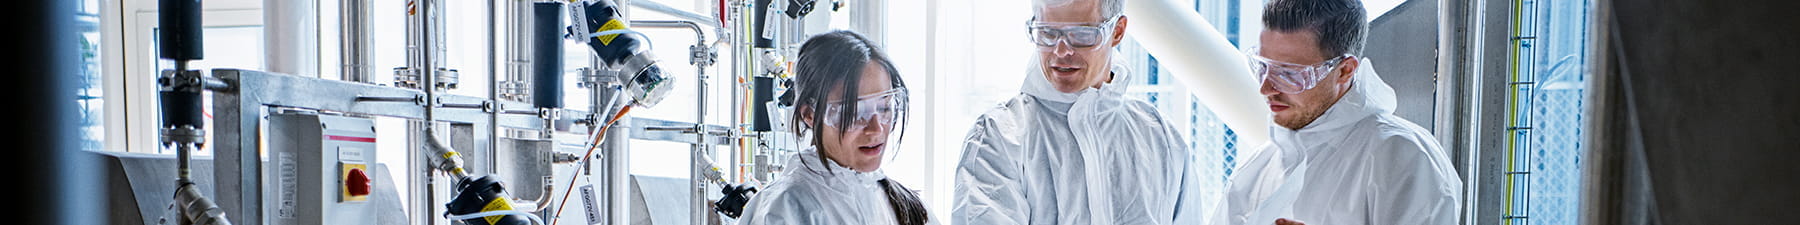 three scientists in lab